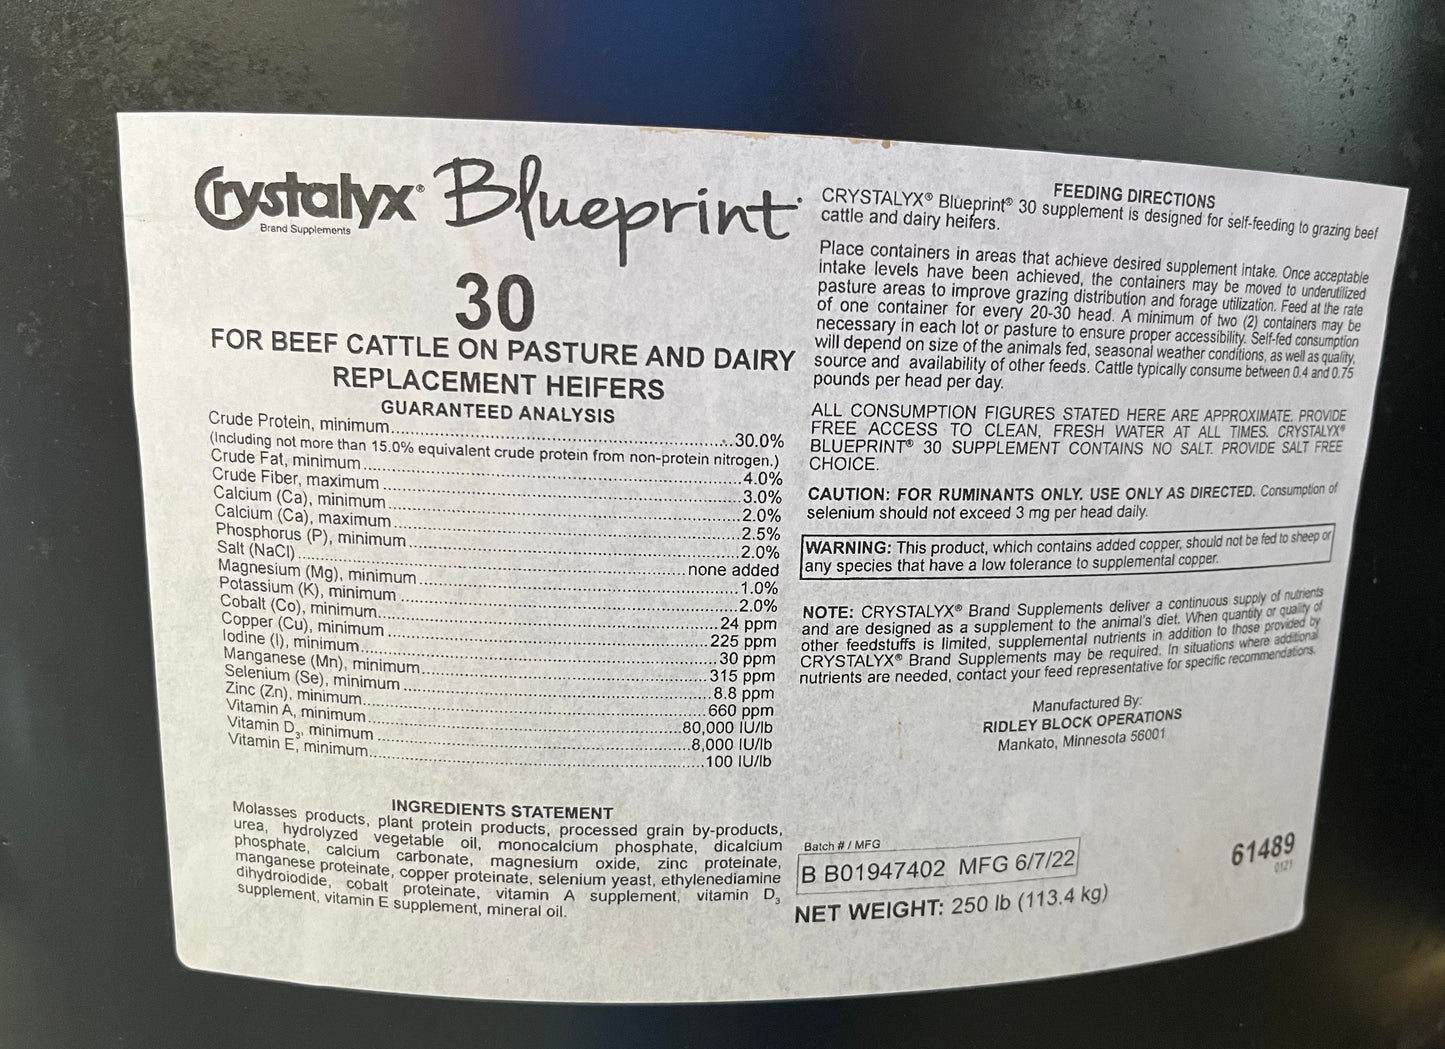 30% Crystalyx Blueprint Lick Tub 250lb